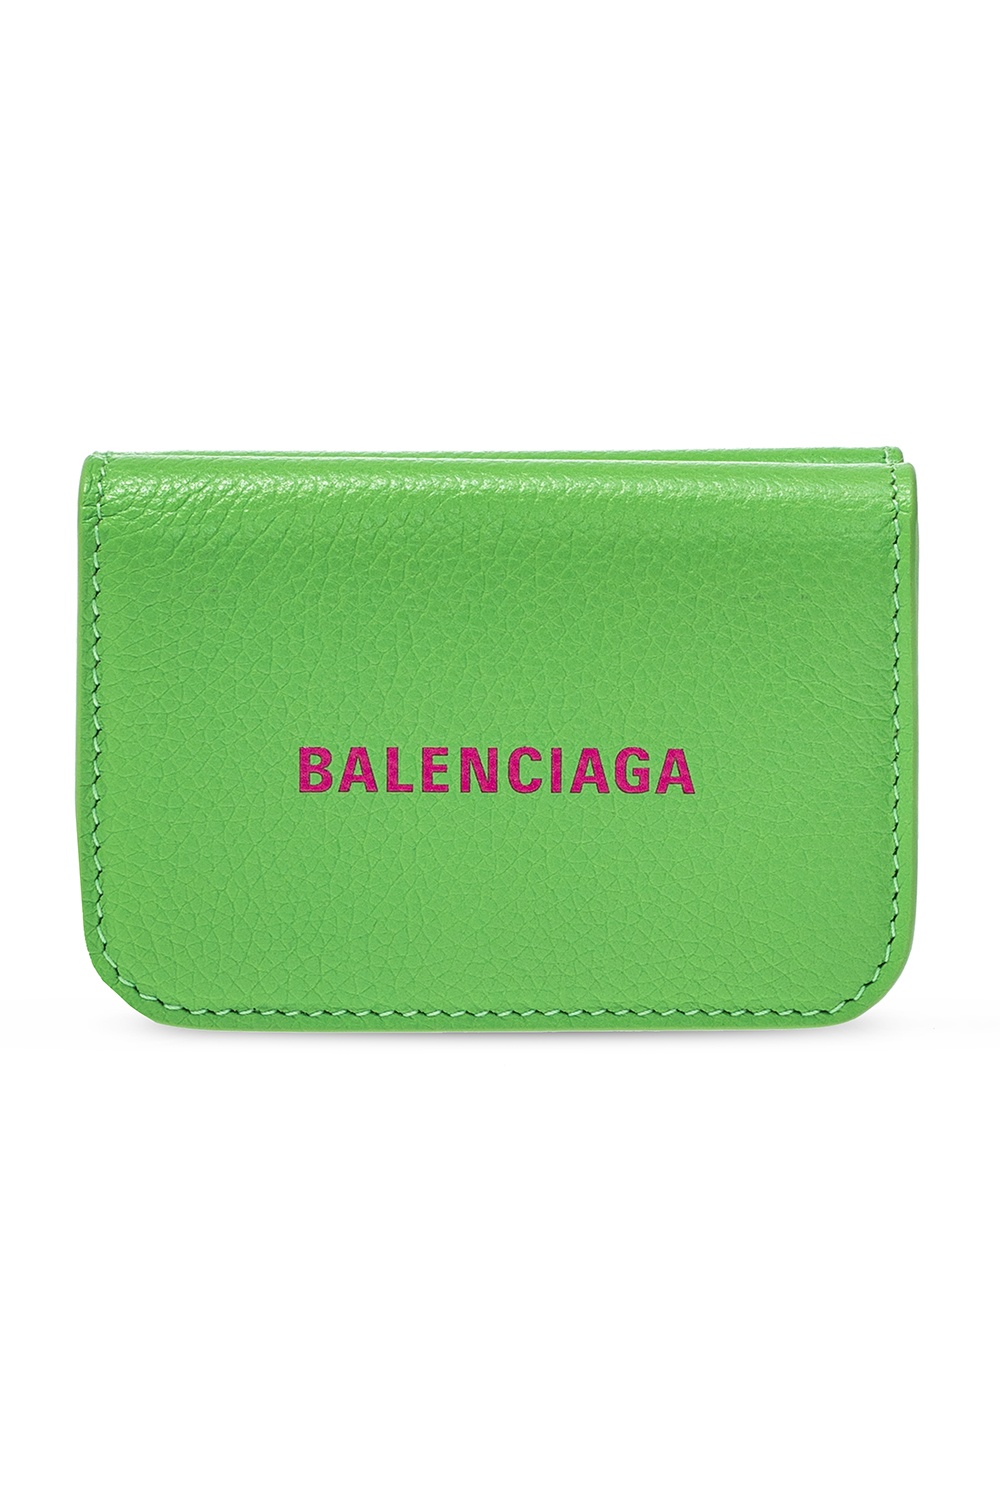 Green Wallet with logo Balenciaga - IetpShops